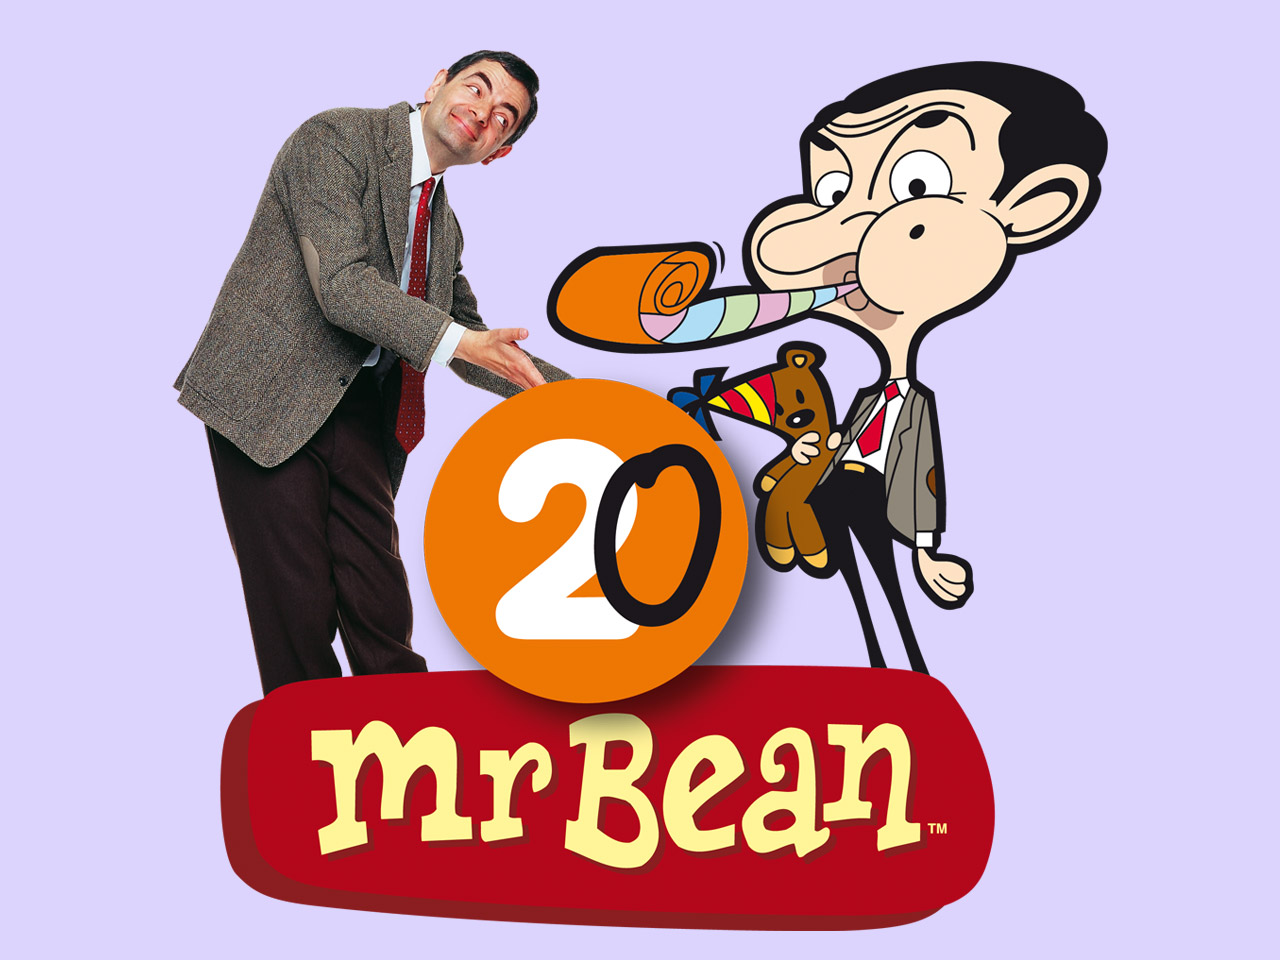 Mister Bean Cartoon Wallpaper | Cartoon Images